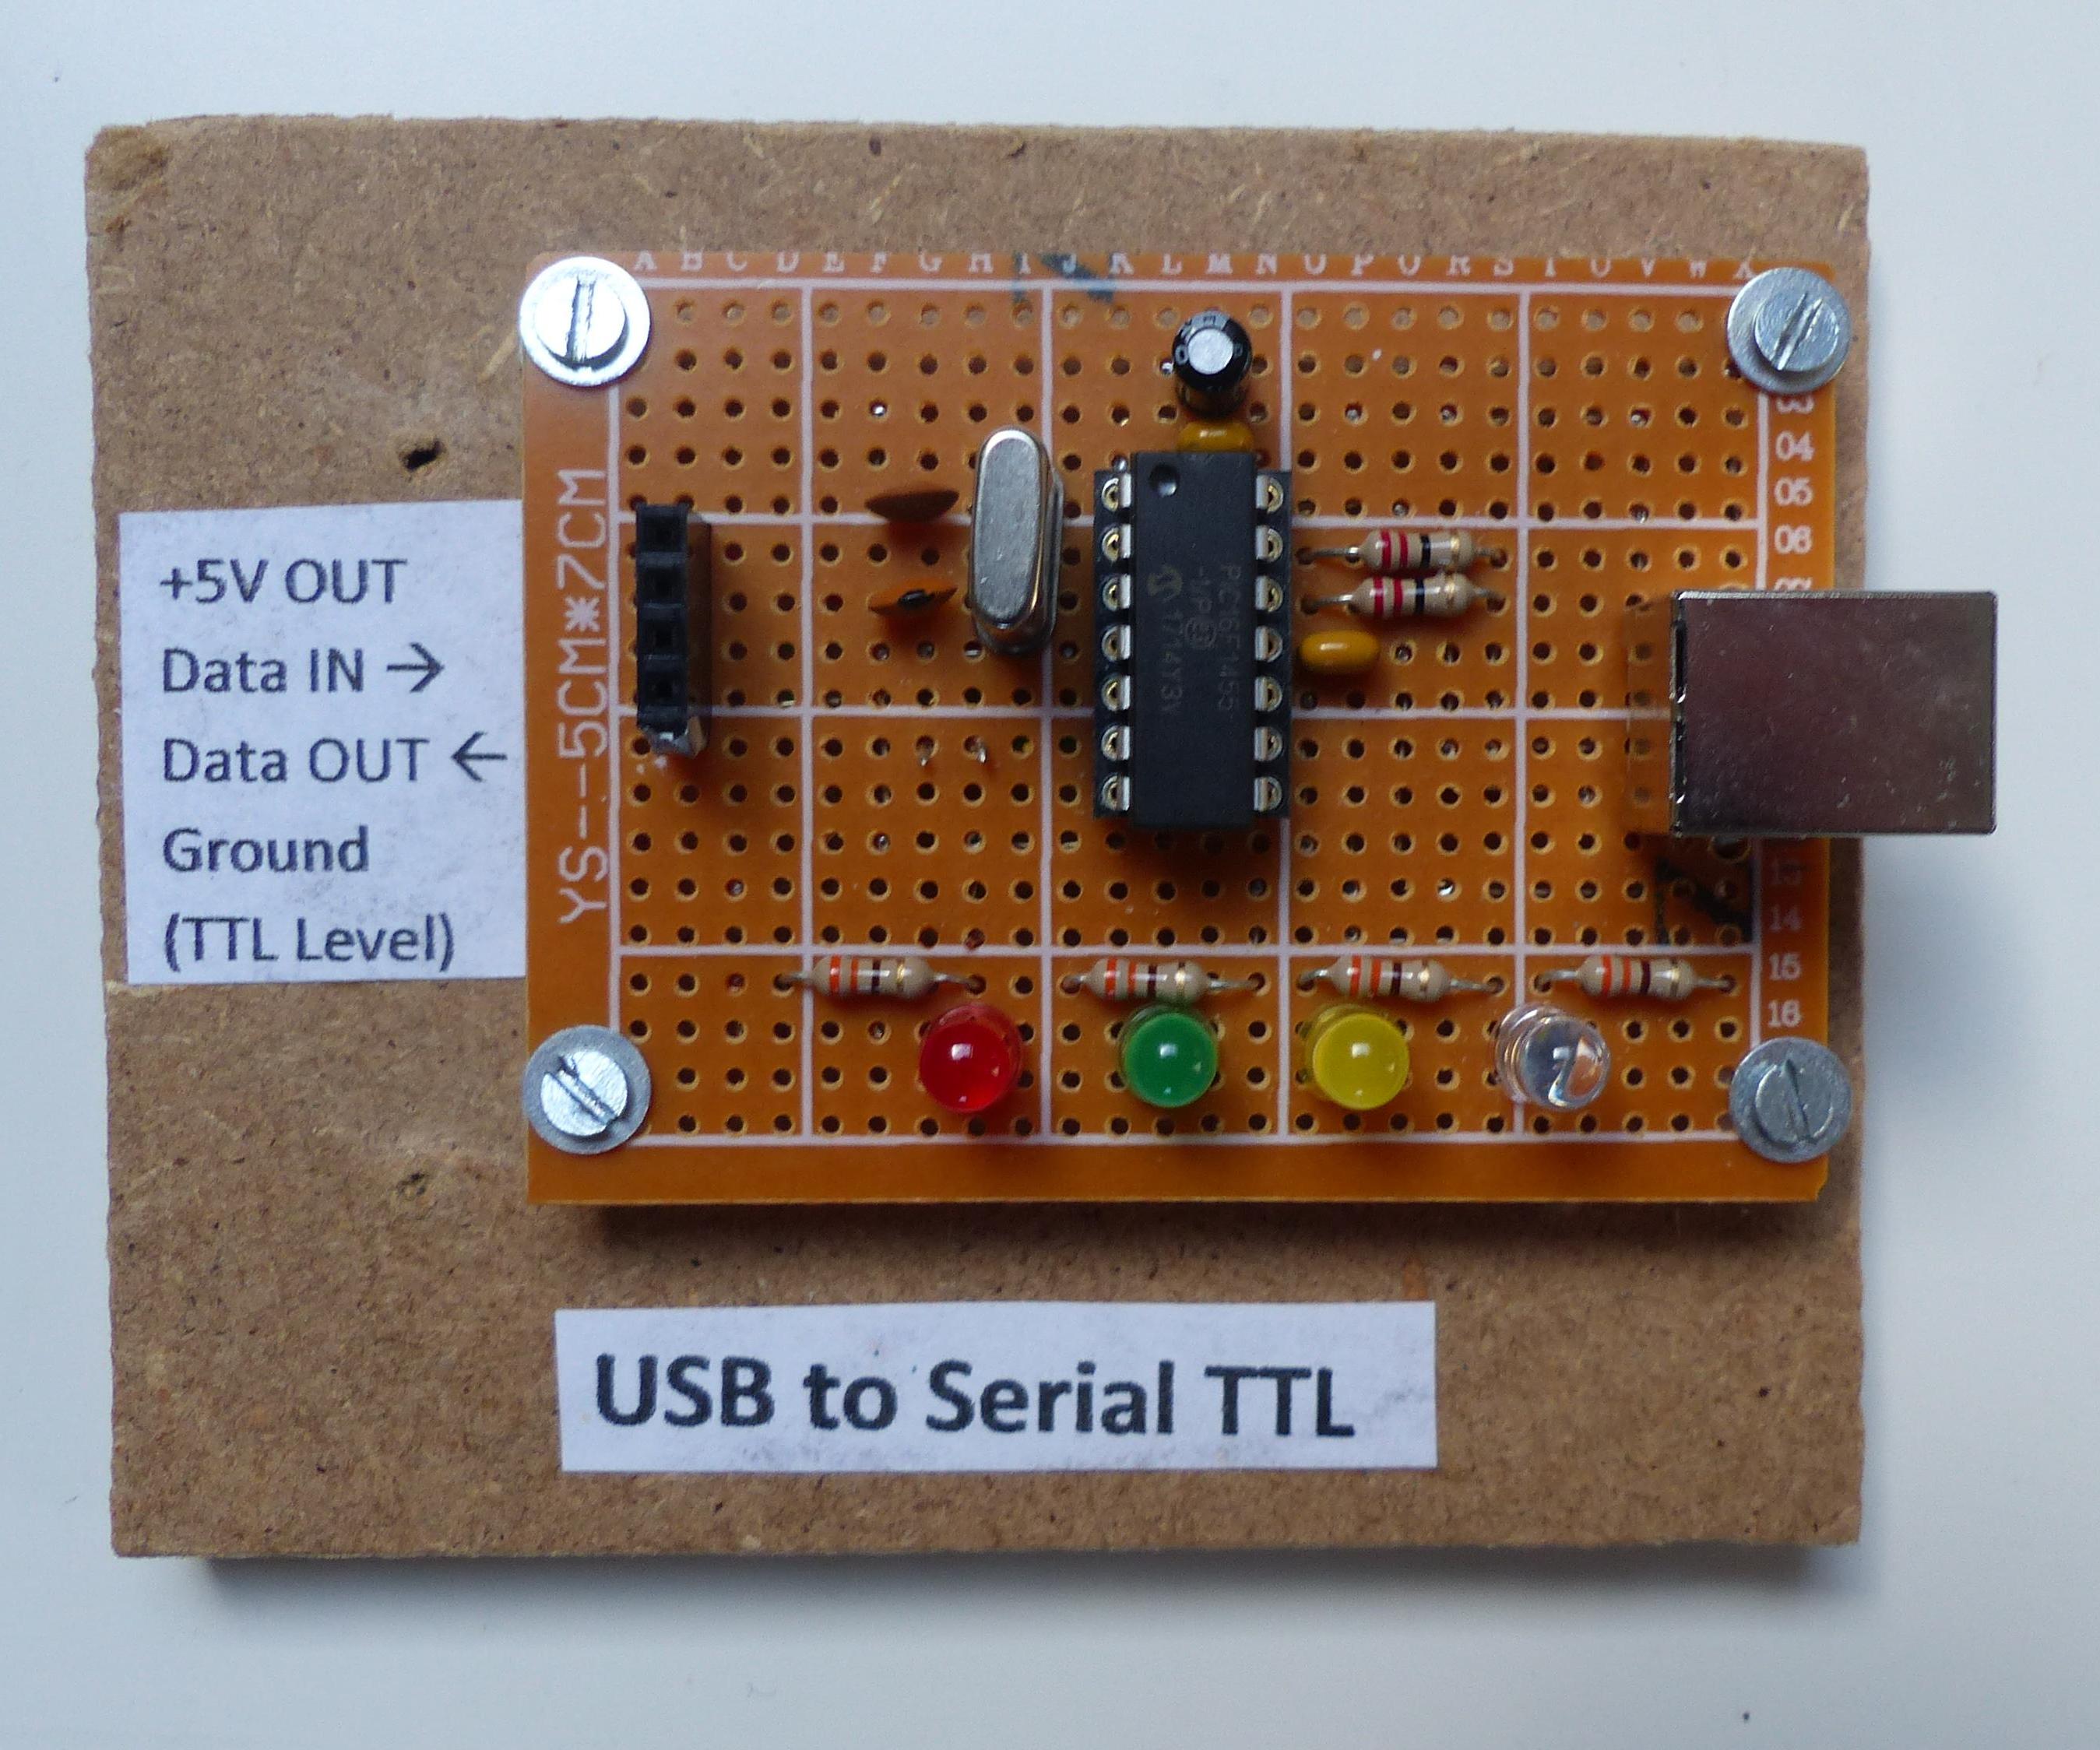 USB to Serial TTL V2